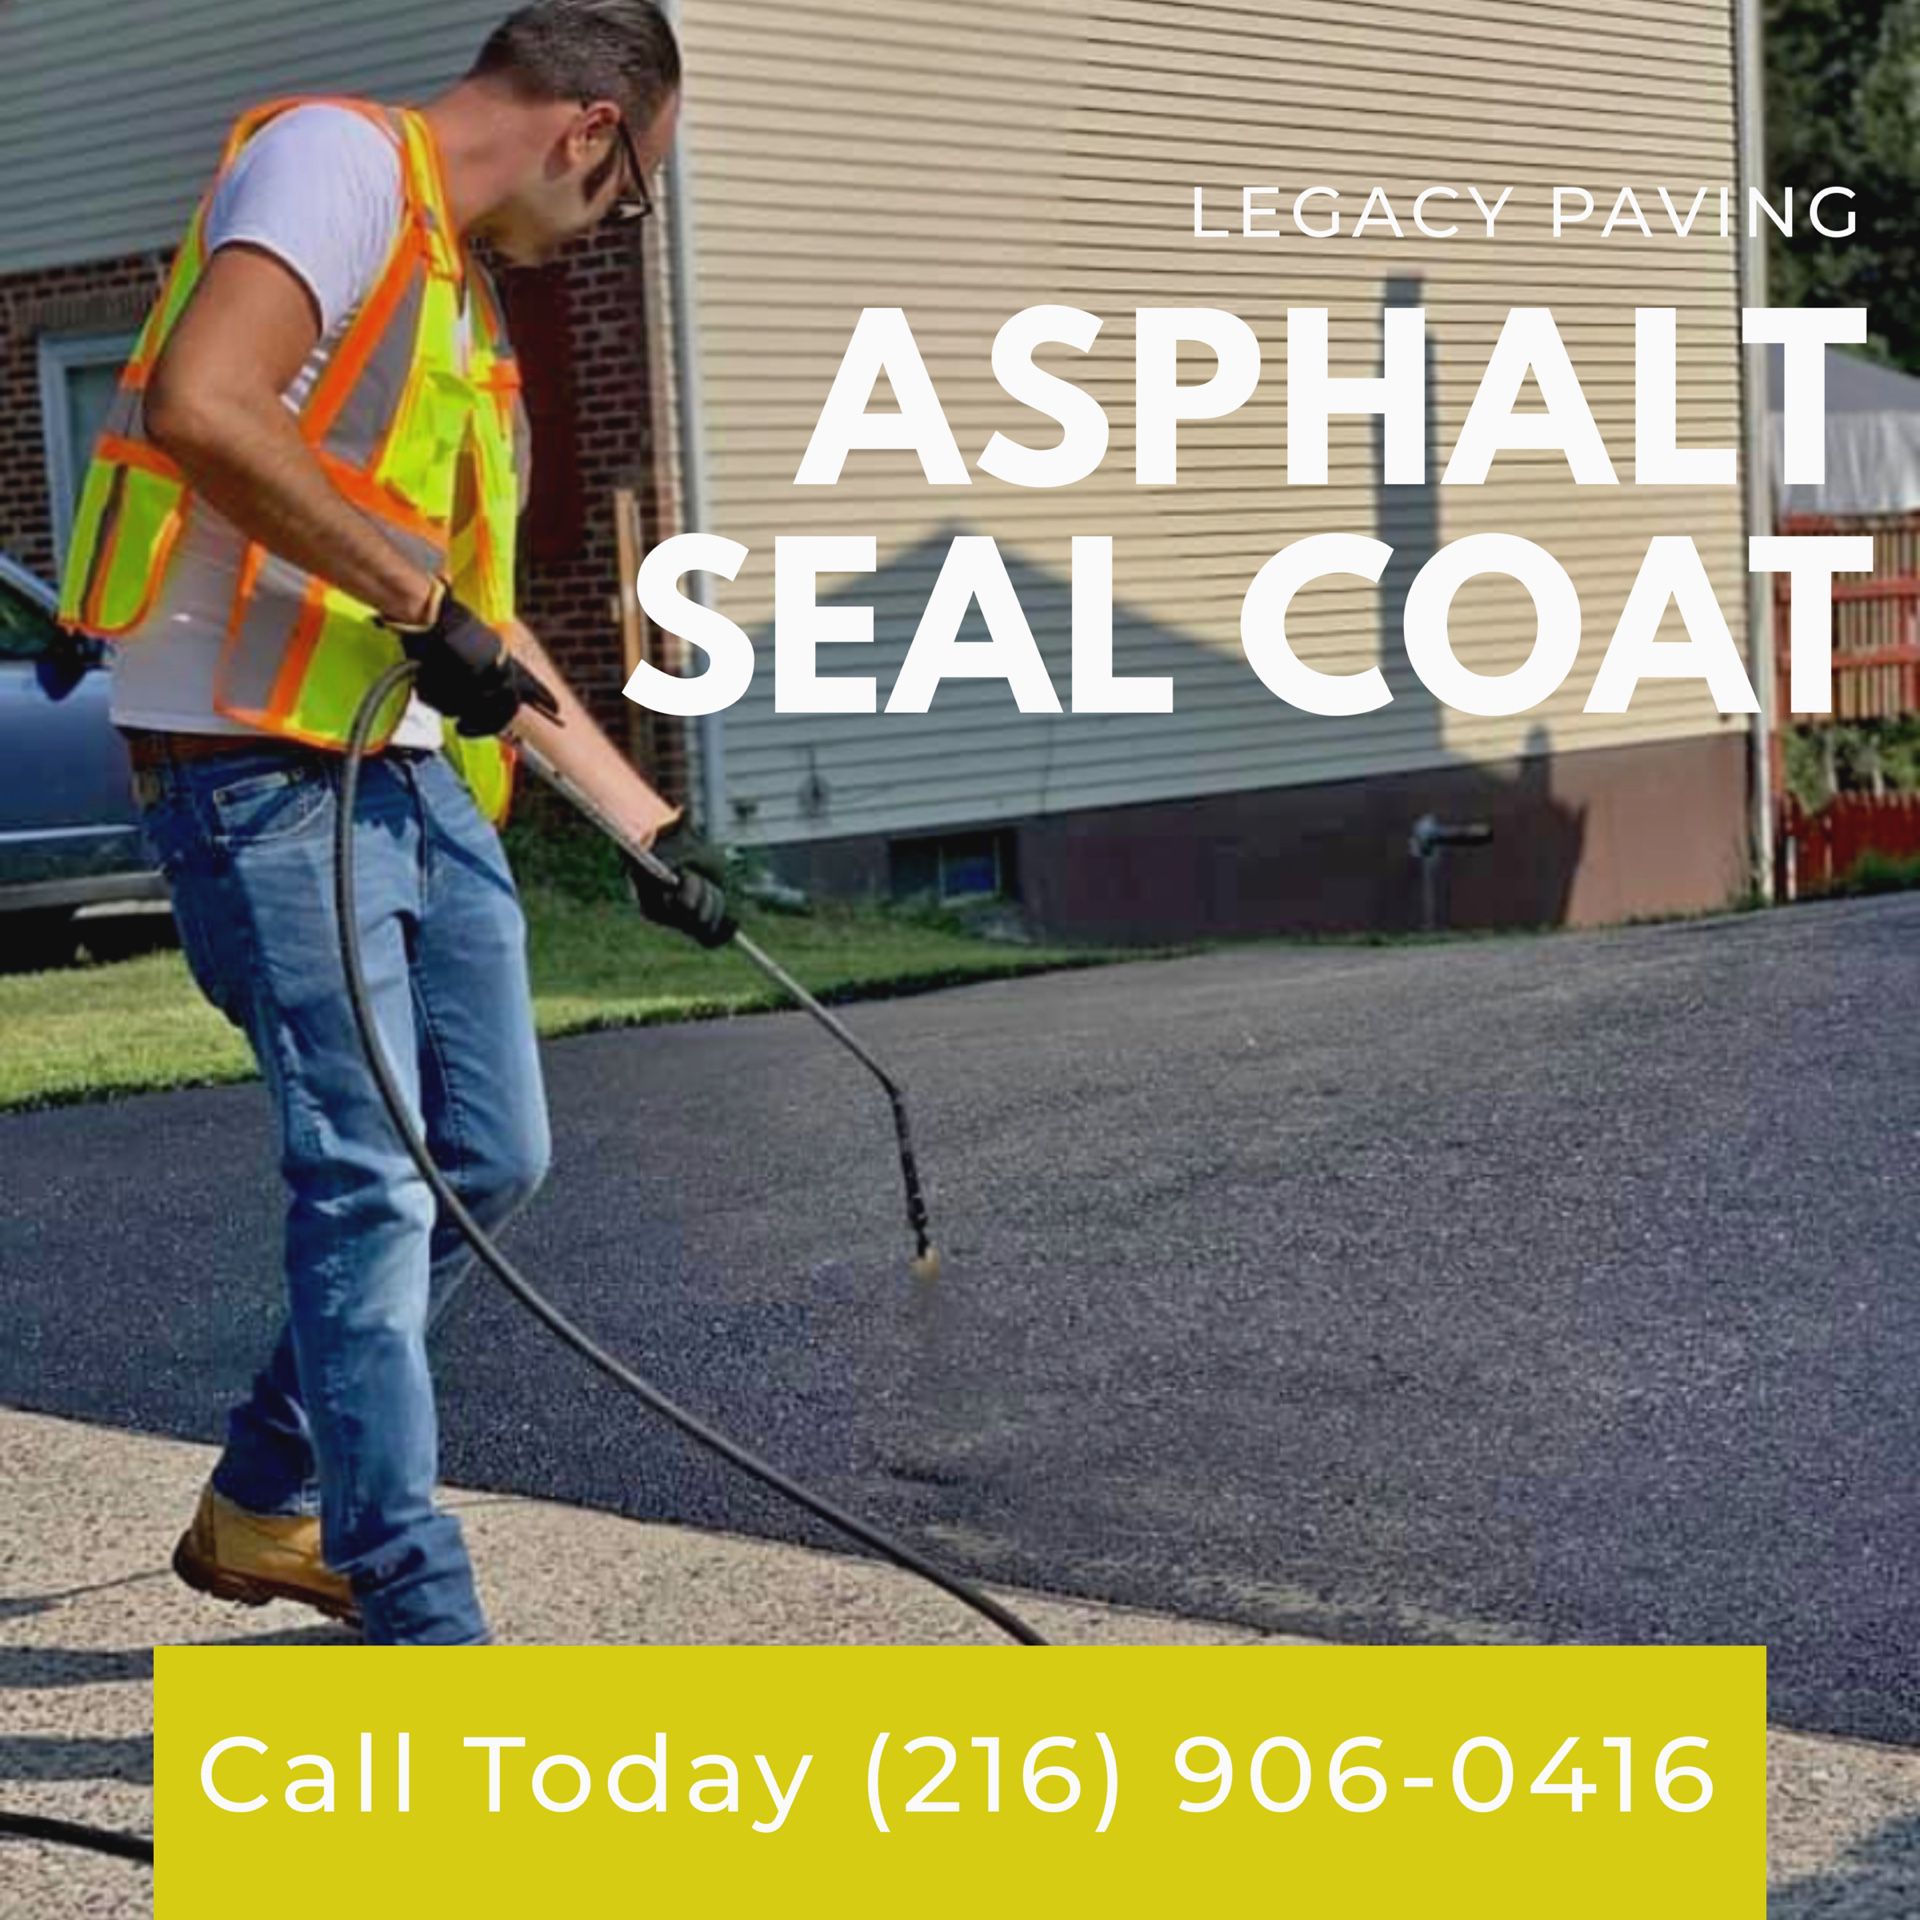 Asphalt paving and seal coating